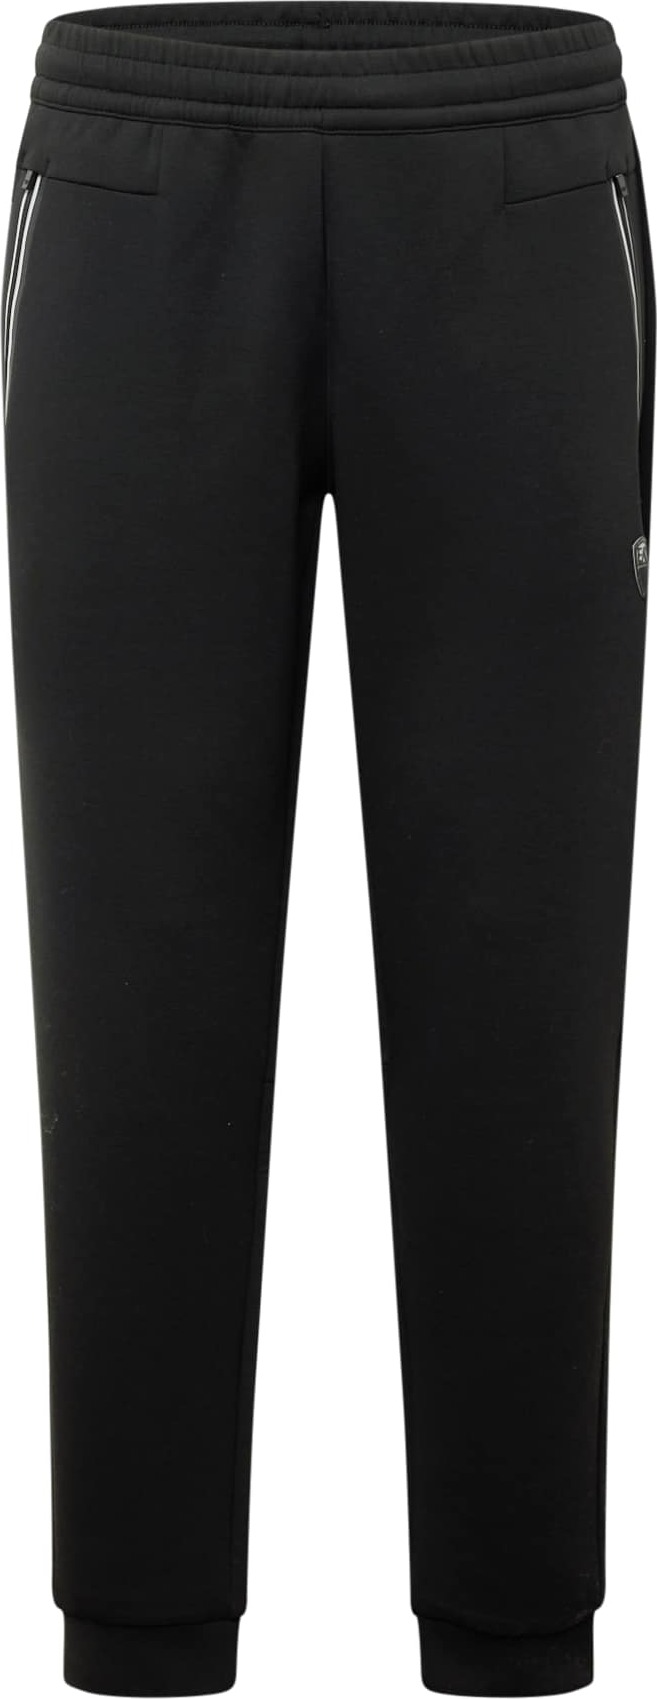 Kalhoty EA7 Emporio Armani černá / bílá